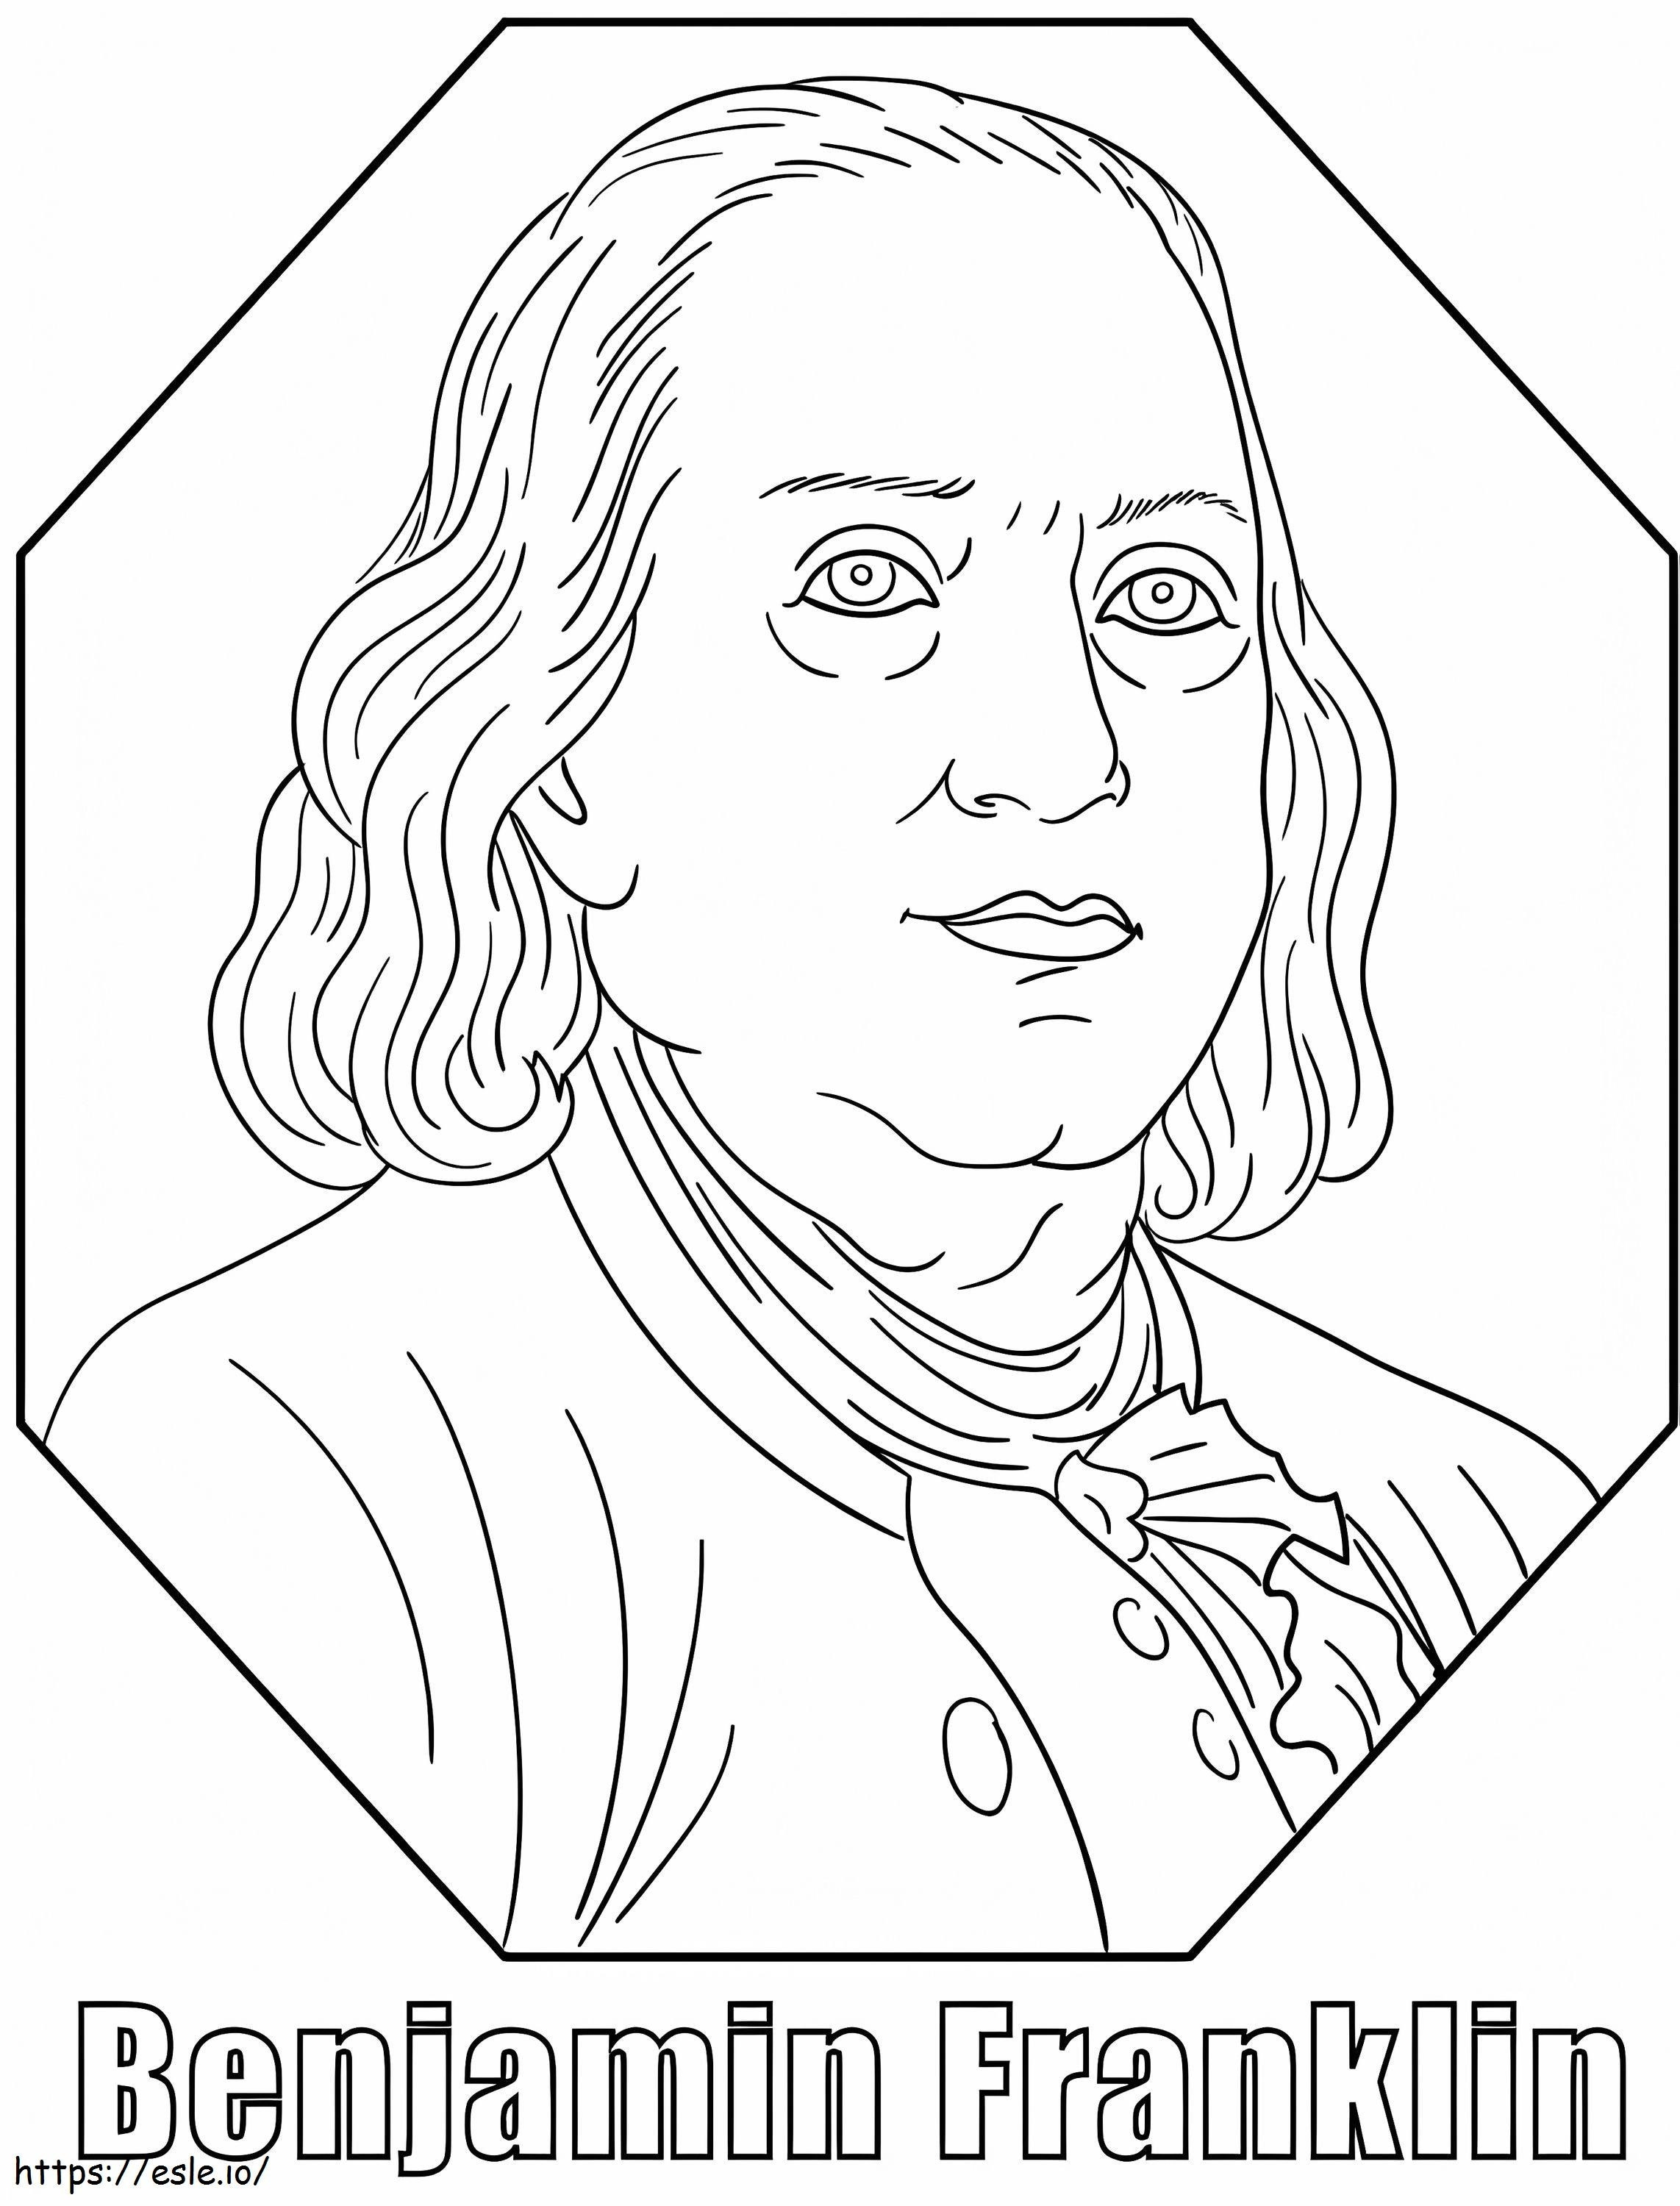 Benjamin Franklin 7 coloring page